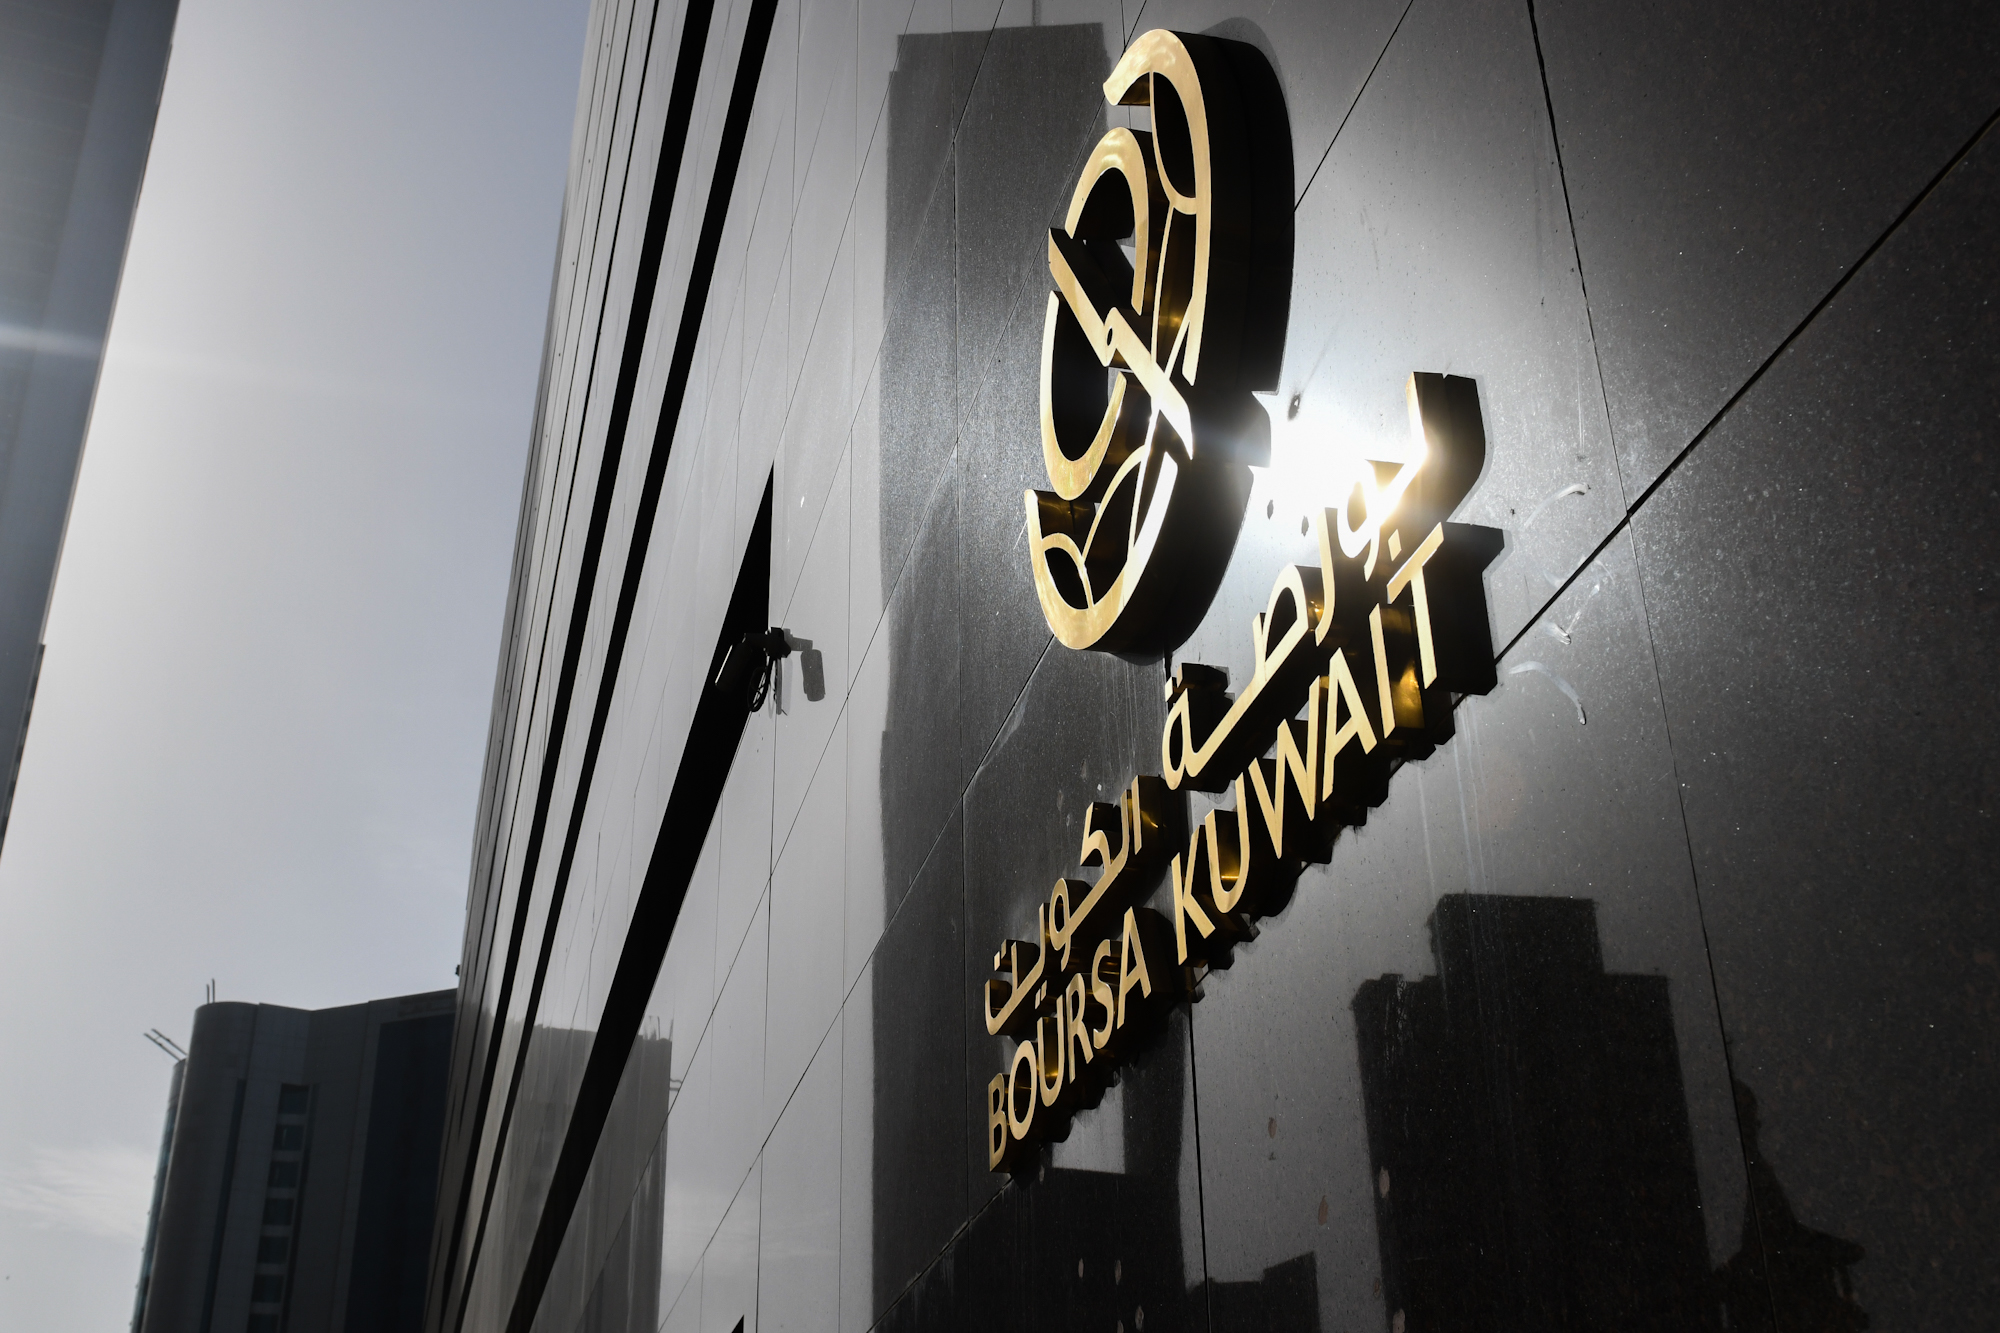 بورصة الكويت تغلق تعاملاتها على انخفاض مؤشرها العام 5ر50 نقطة ليبلغ 32ر7281 بنسبة 69ر0 في المئة                                                                                                                                                           